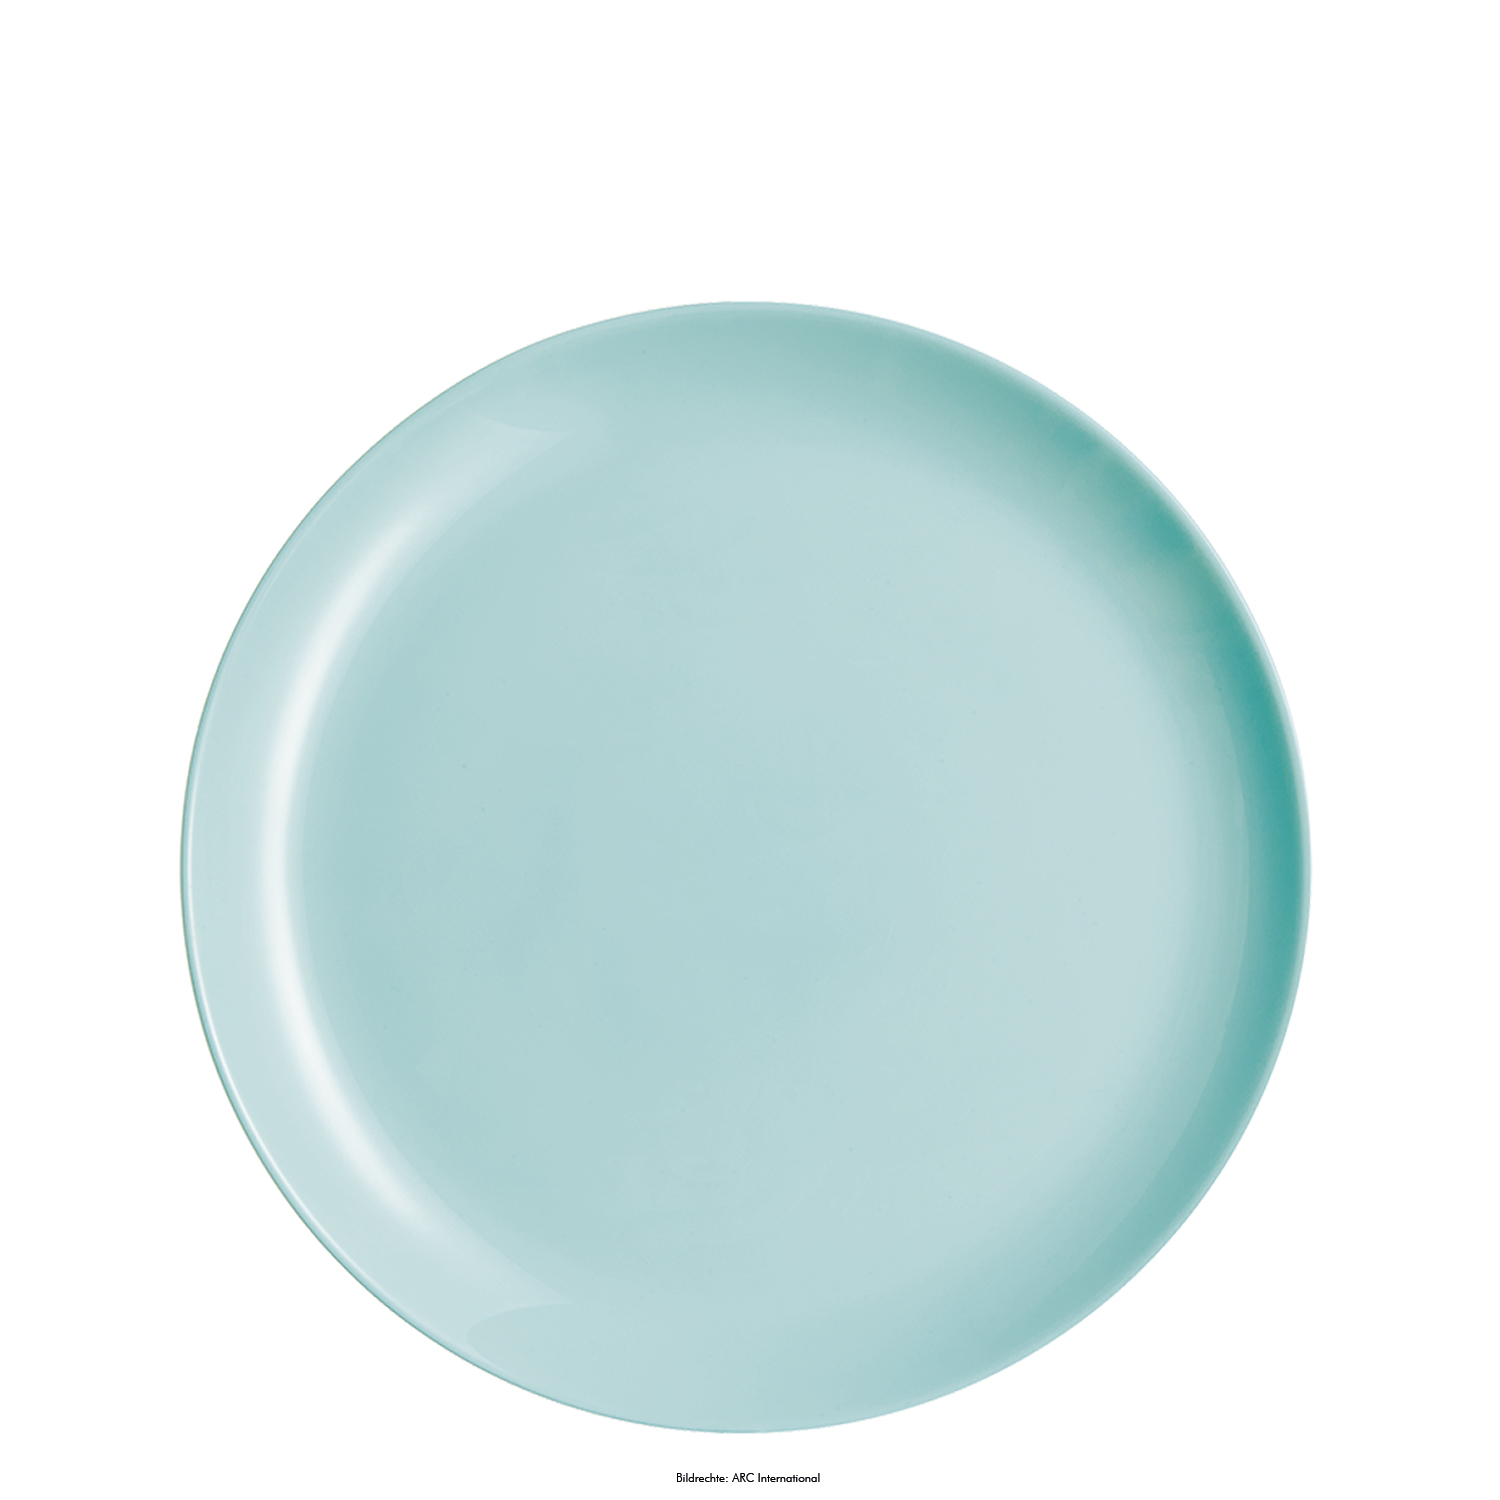 Speiseteller DIWALI flach, Durchm. 27 cm, Farbe: mint, aus Opalglas (gehärtet), in Coupteller-Form, ohne breite "Fahne"